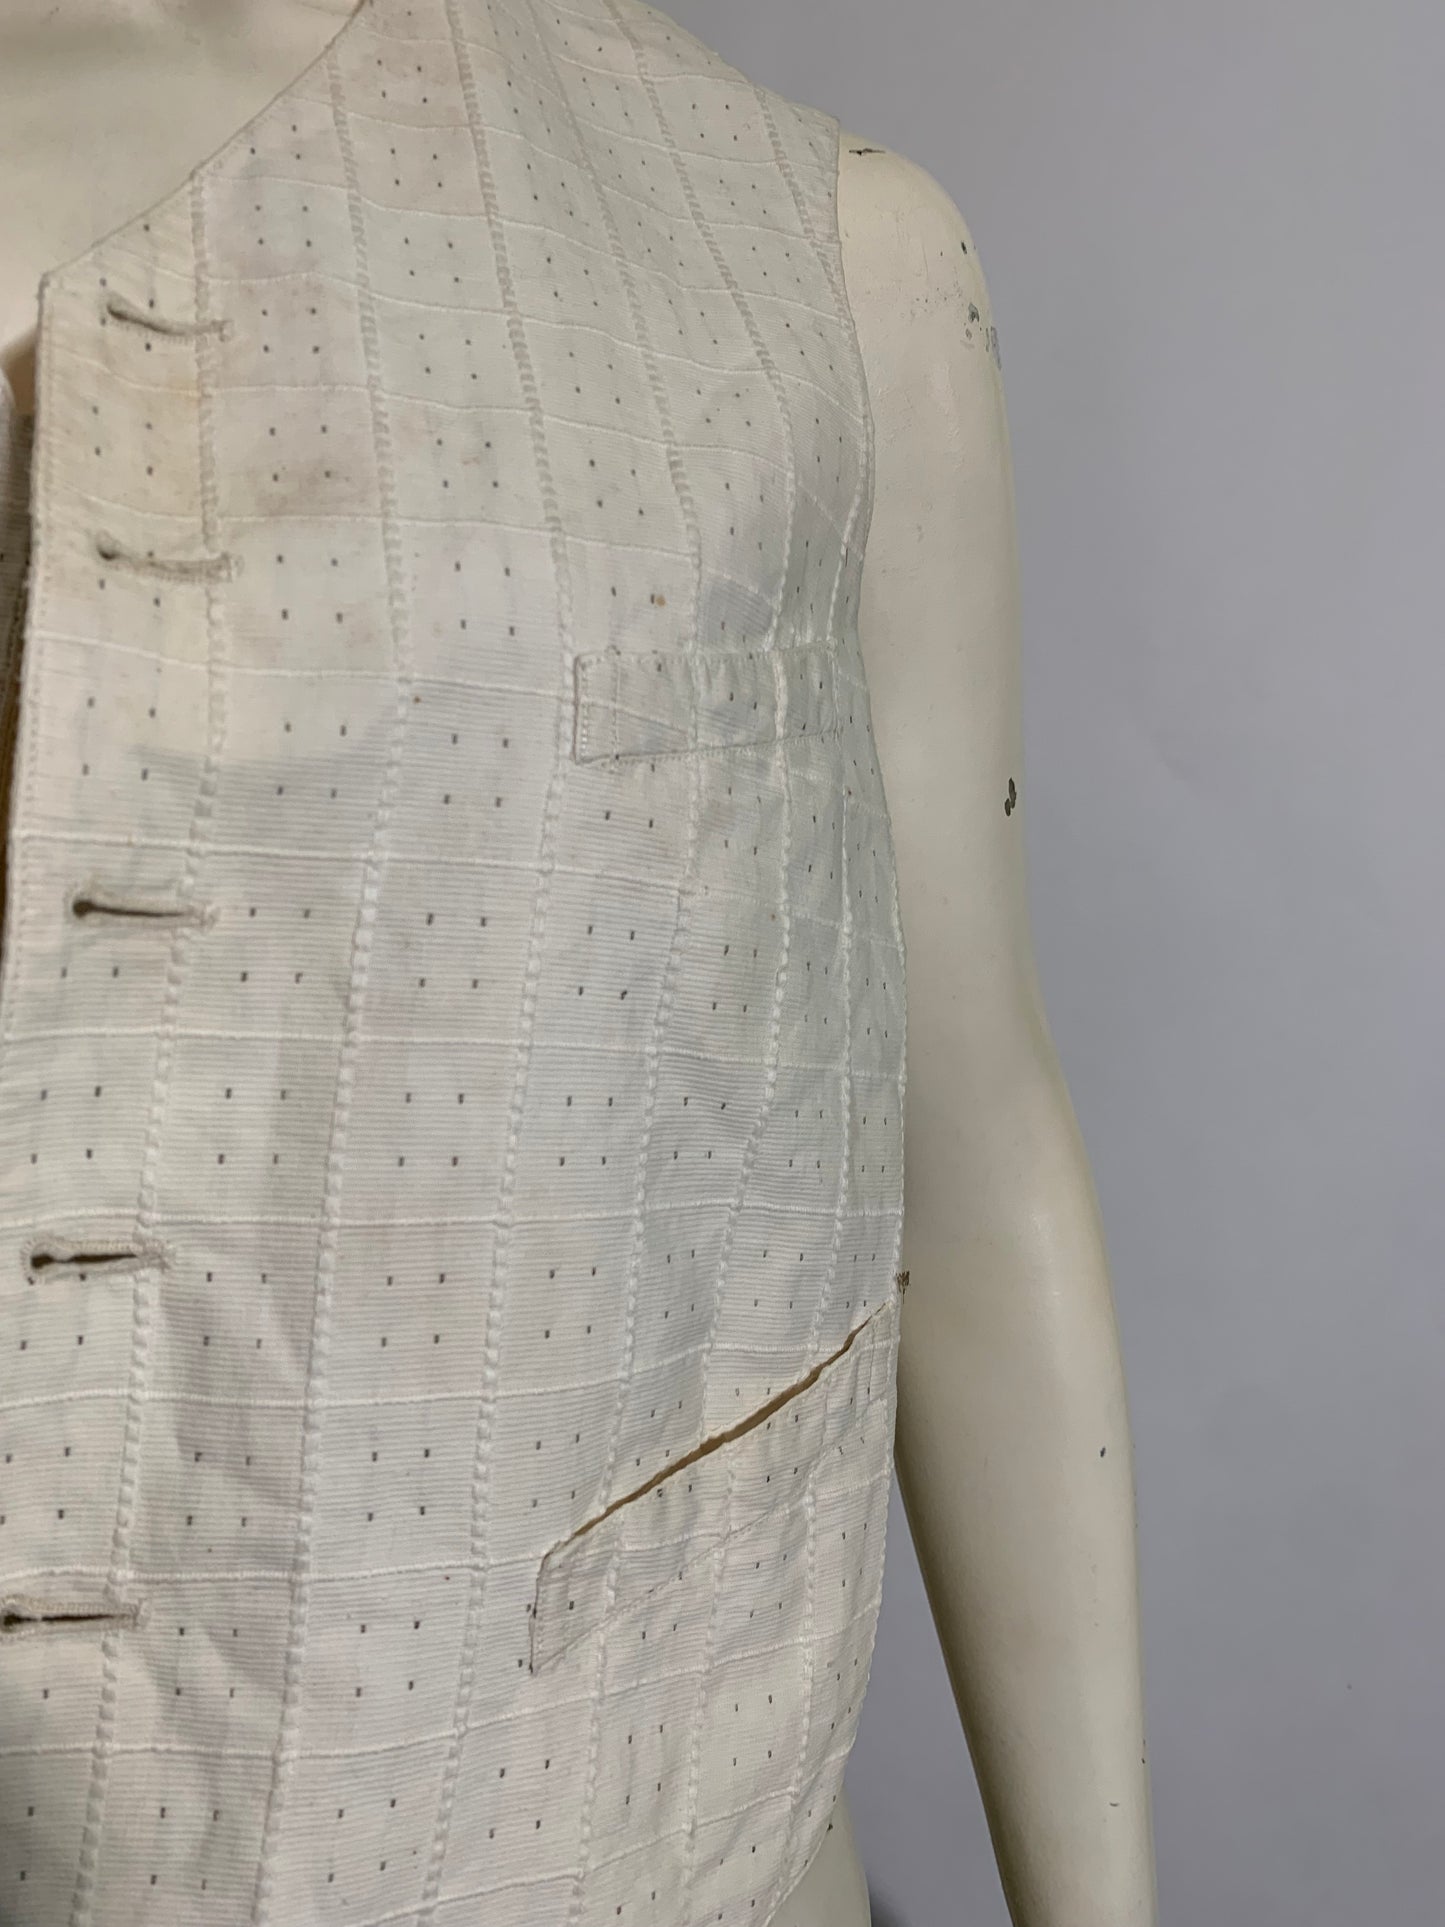 White Cotton Waist Coat Vest circa 1900s